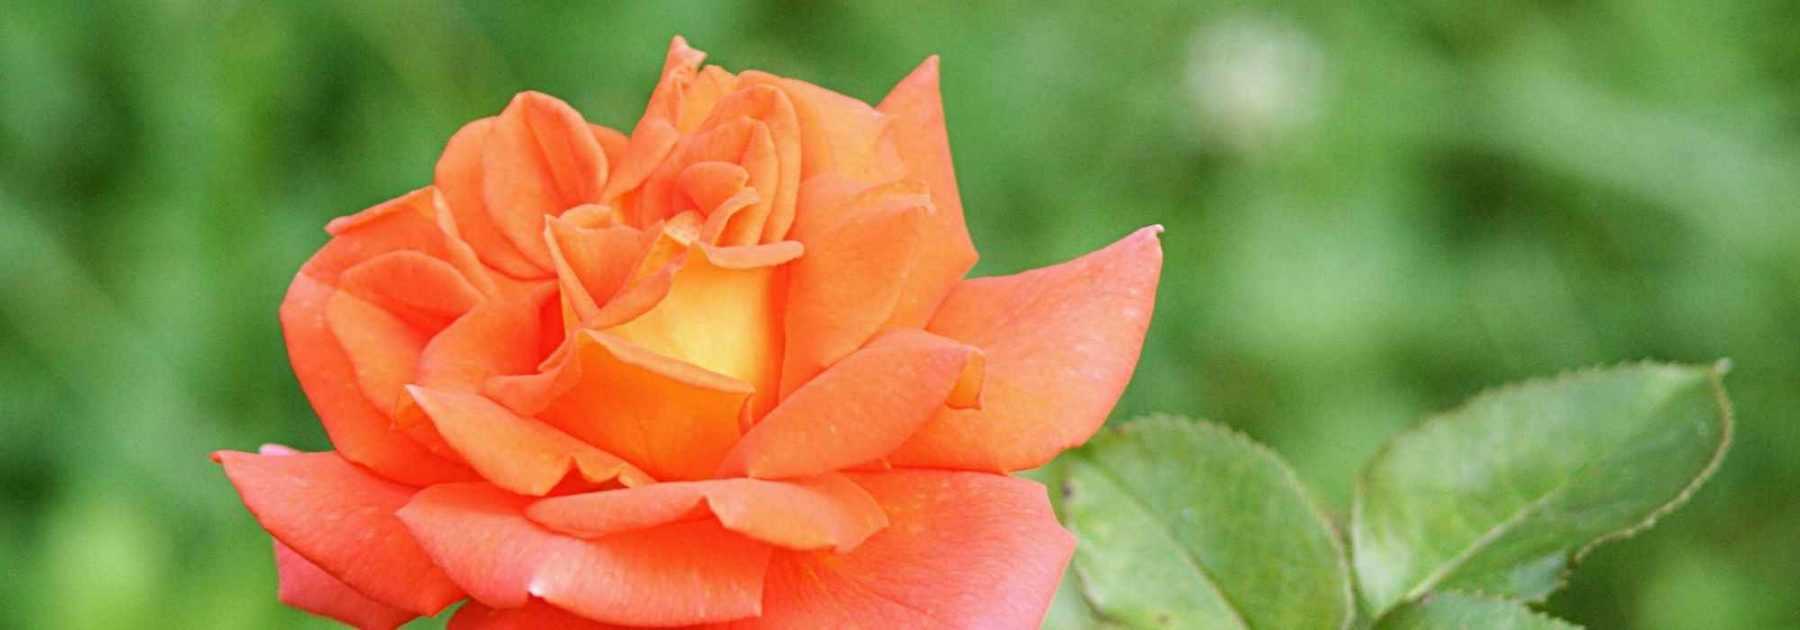 7 rosiers buissons à grandes fleurs orange